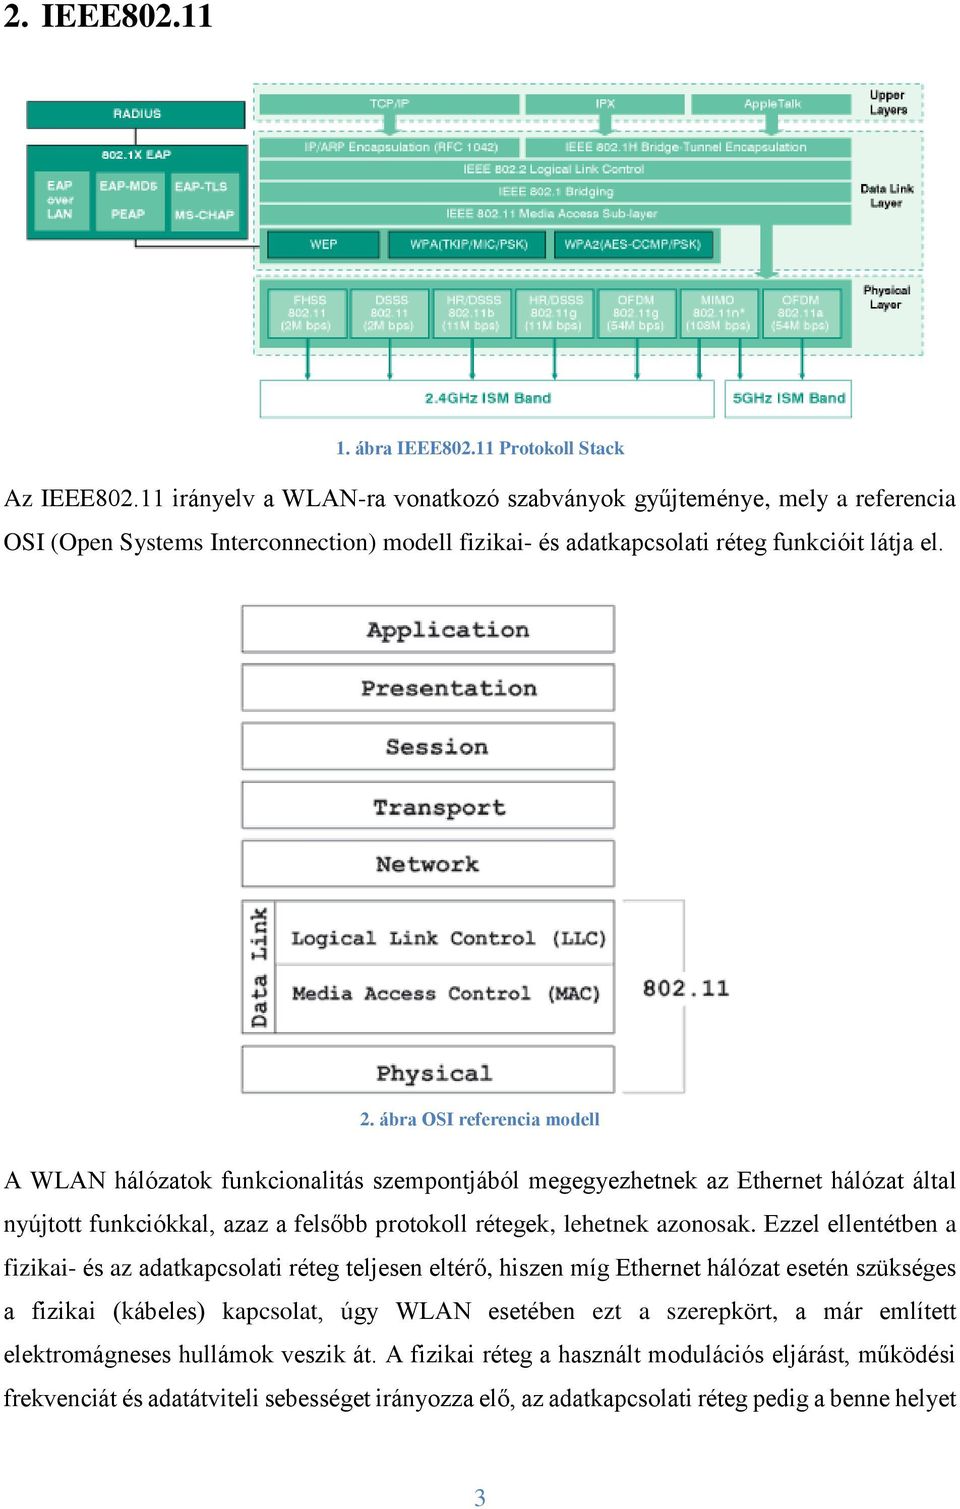 ábra OSI referencia modell A WLAN hálózatok funkcionalitás szempontjából megegyezhetnek az Ethernet hálózat által nyújtott funkciókkal, azaz a felsőbb protokoll rétegek, lehetnek azonosak.